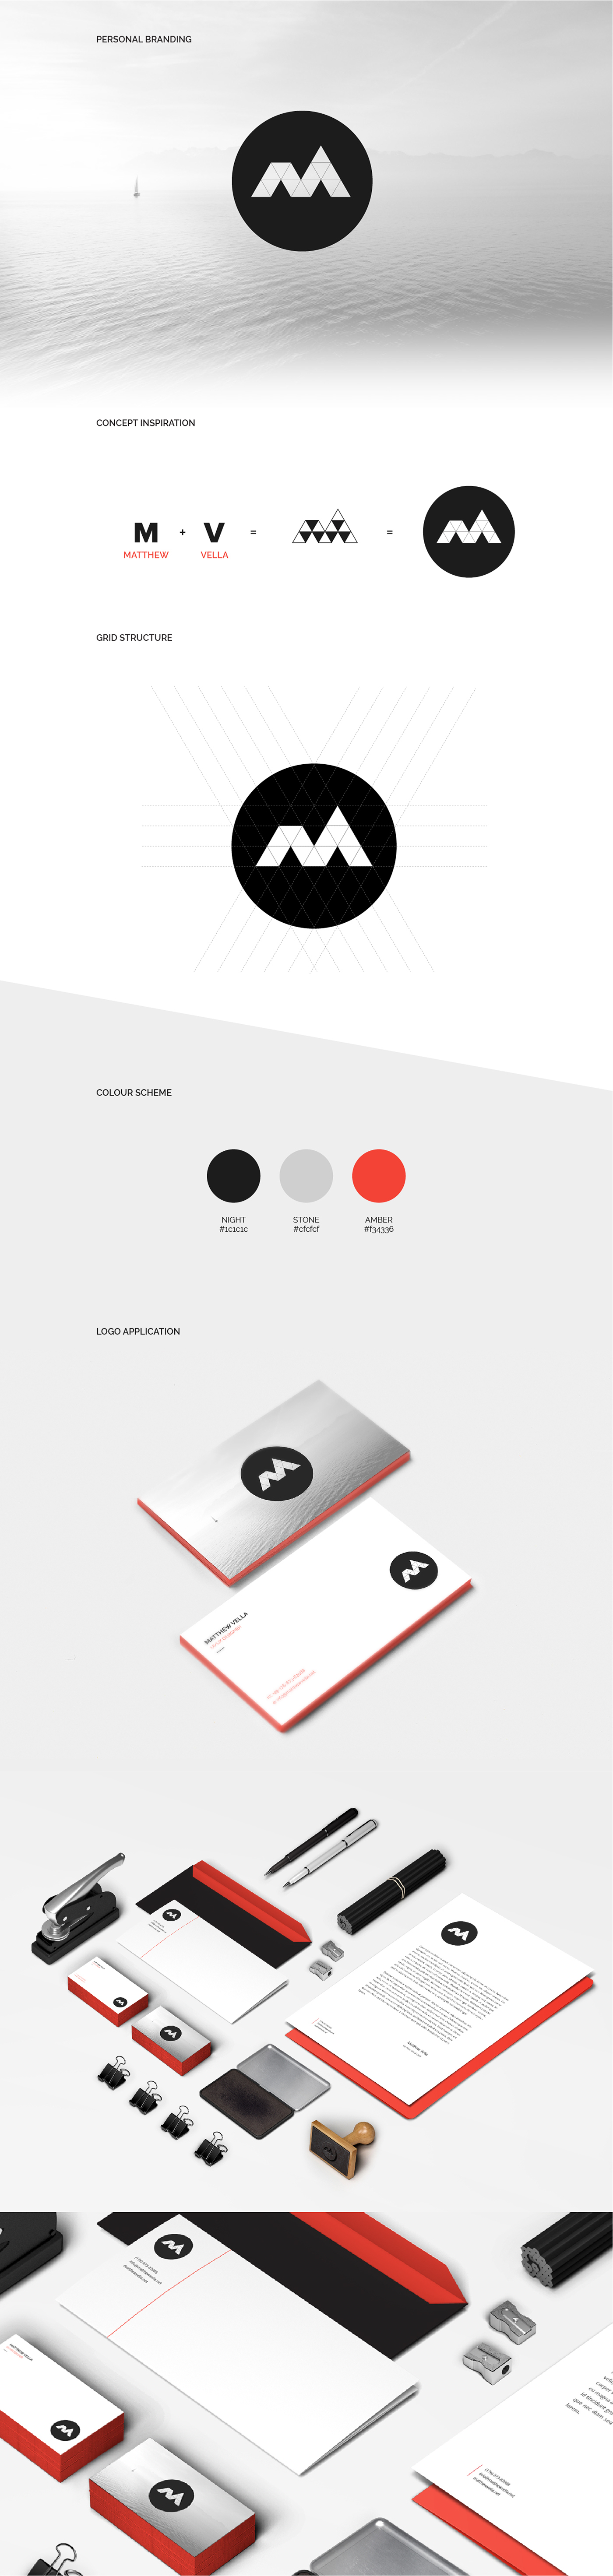 CV Layout Curriculum Vitae Graphic Designer Web designer multimedia designer blue orange Clean Design